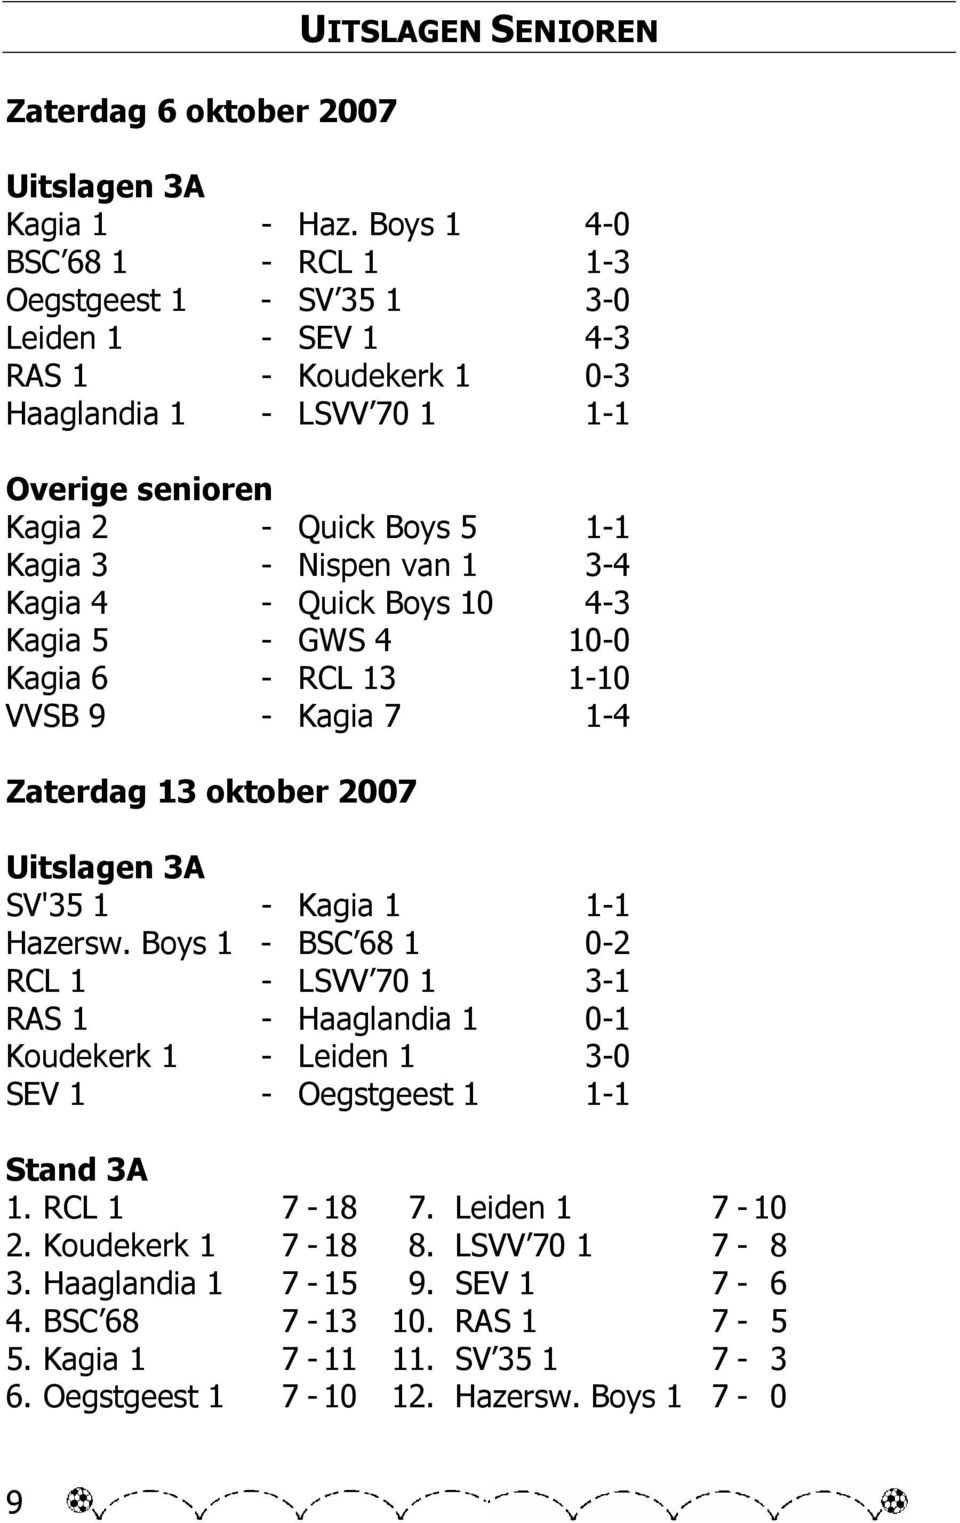 van 1 3-4 Kagia 4 - Quick Boys 10 4-3 Kagia 5 - GWS 4 10-0 Kagia 6 - RCL 13 1-10 VVSB 9 - Kagia 7 1-4 Zaterdag 13 oktober 2007 Uitslagen 3A SV'35 1 - Kagia 1 1-1 Hazersw.